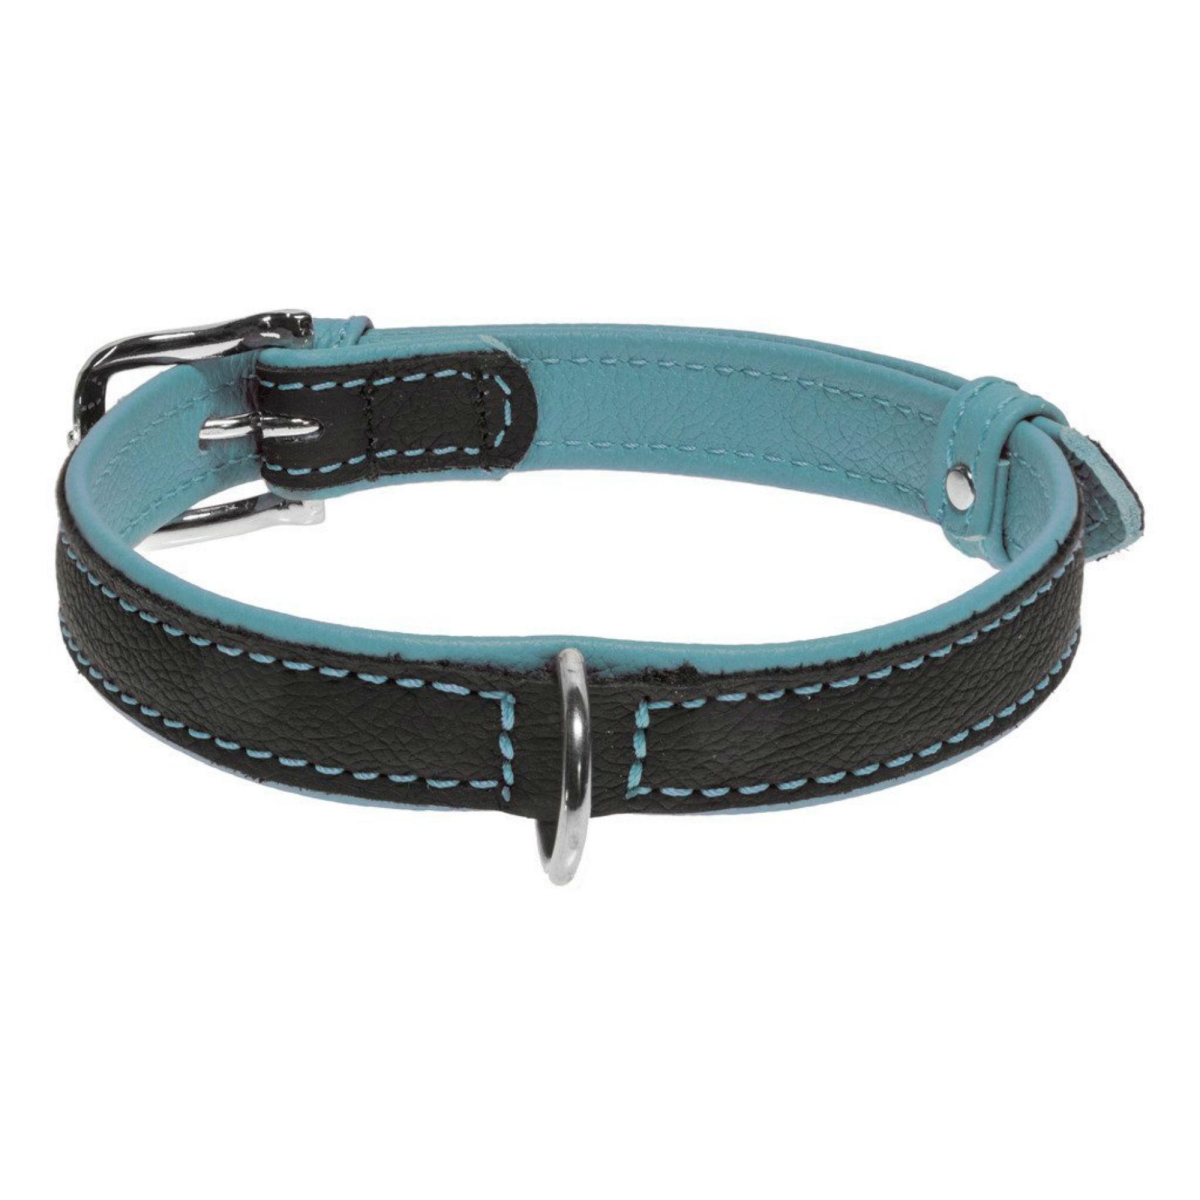 Dog Line L1013-teal-lg Soft Leather Dual Color Dog Collar, Teal - Large